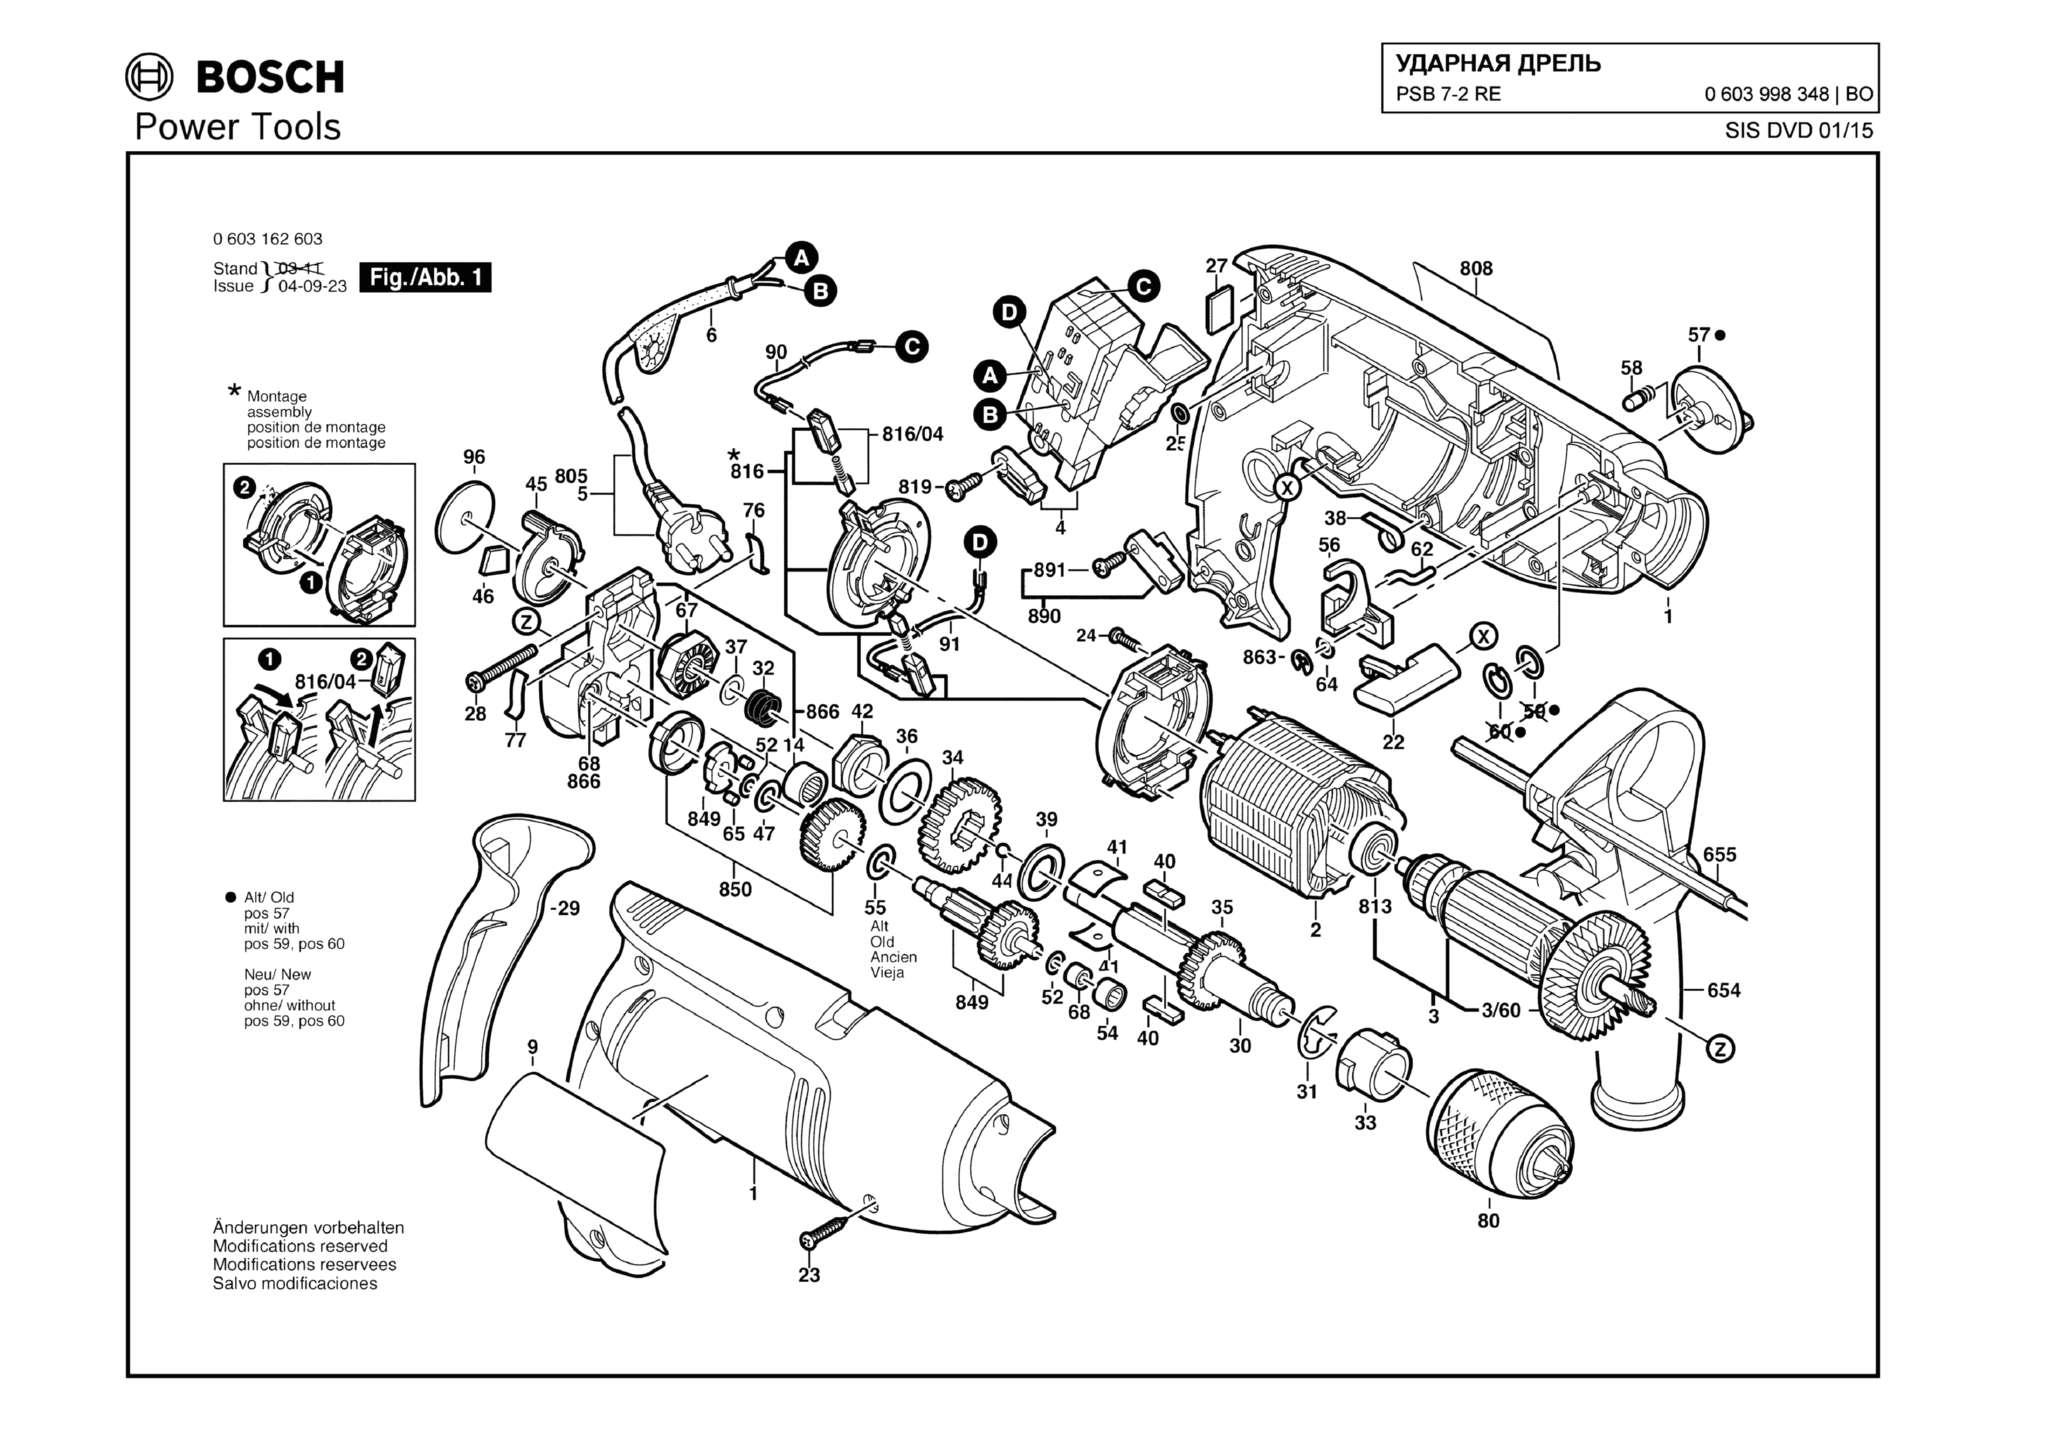 Запчасти, схема и деталировка Bosch PSB 7-2 RE (ТИП 0603998348)